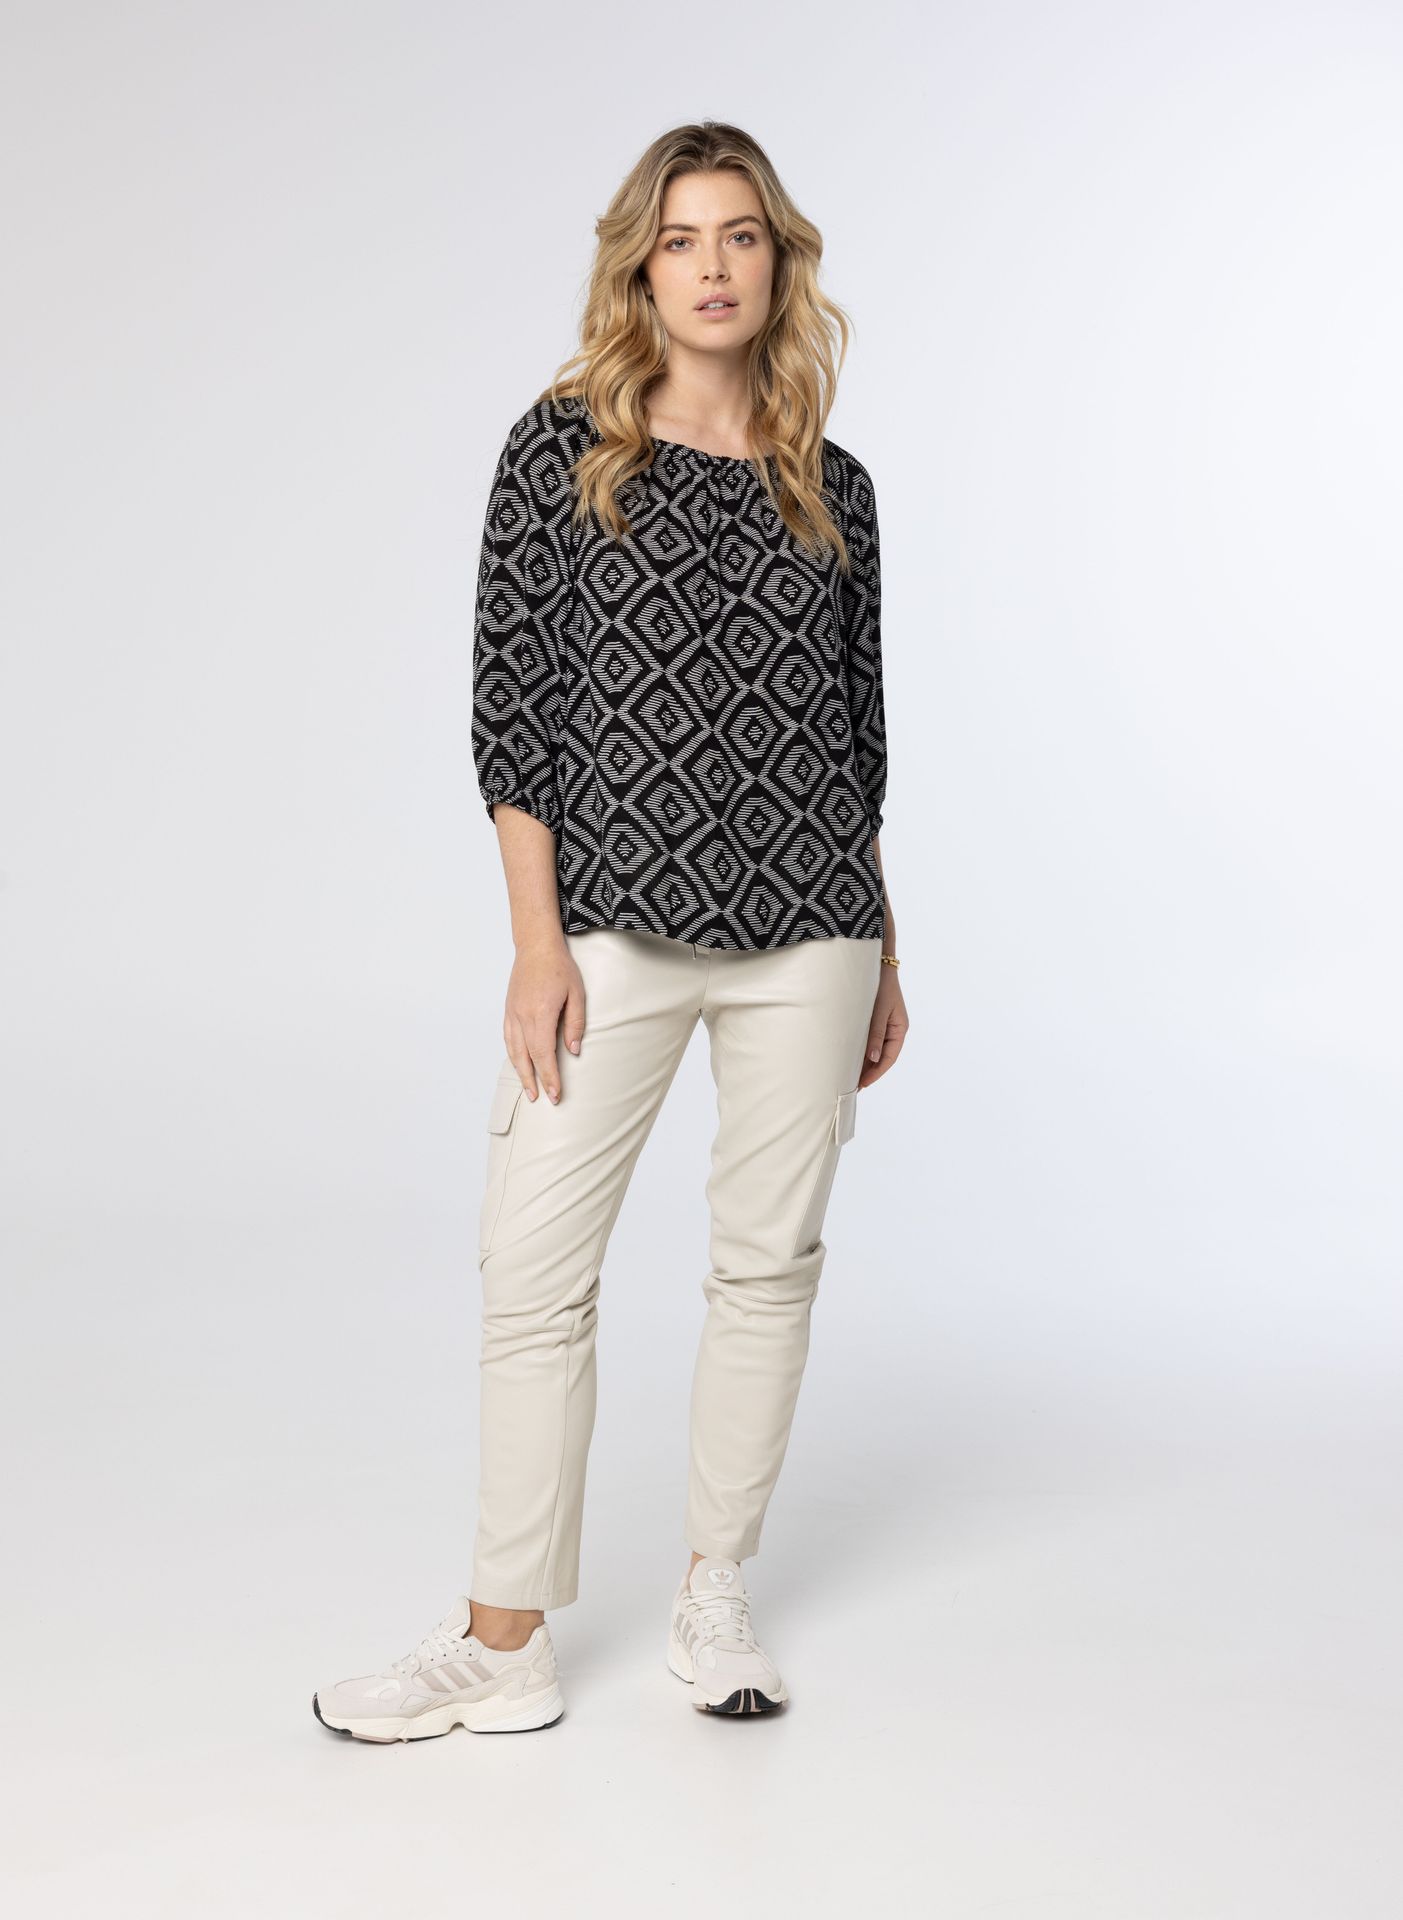 Norah Zwart witte blouse black/white 213812-031